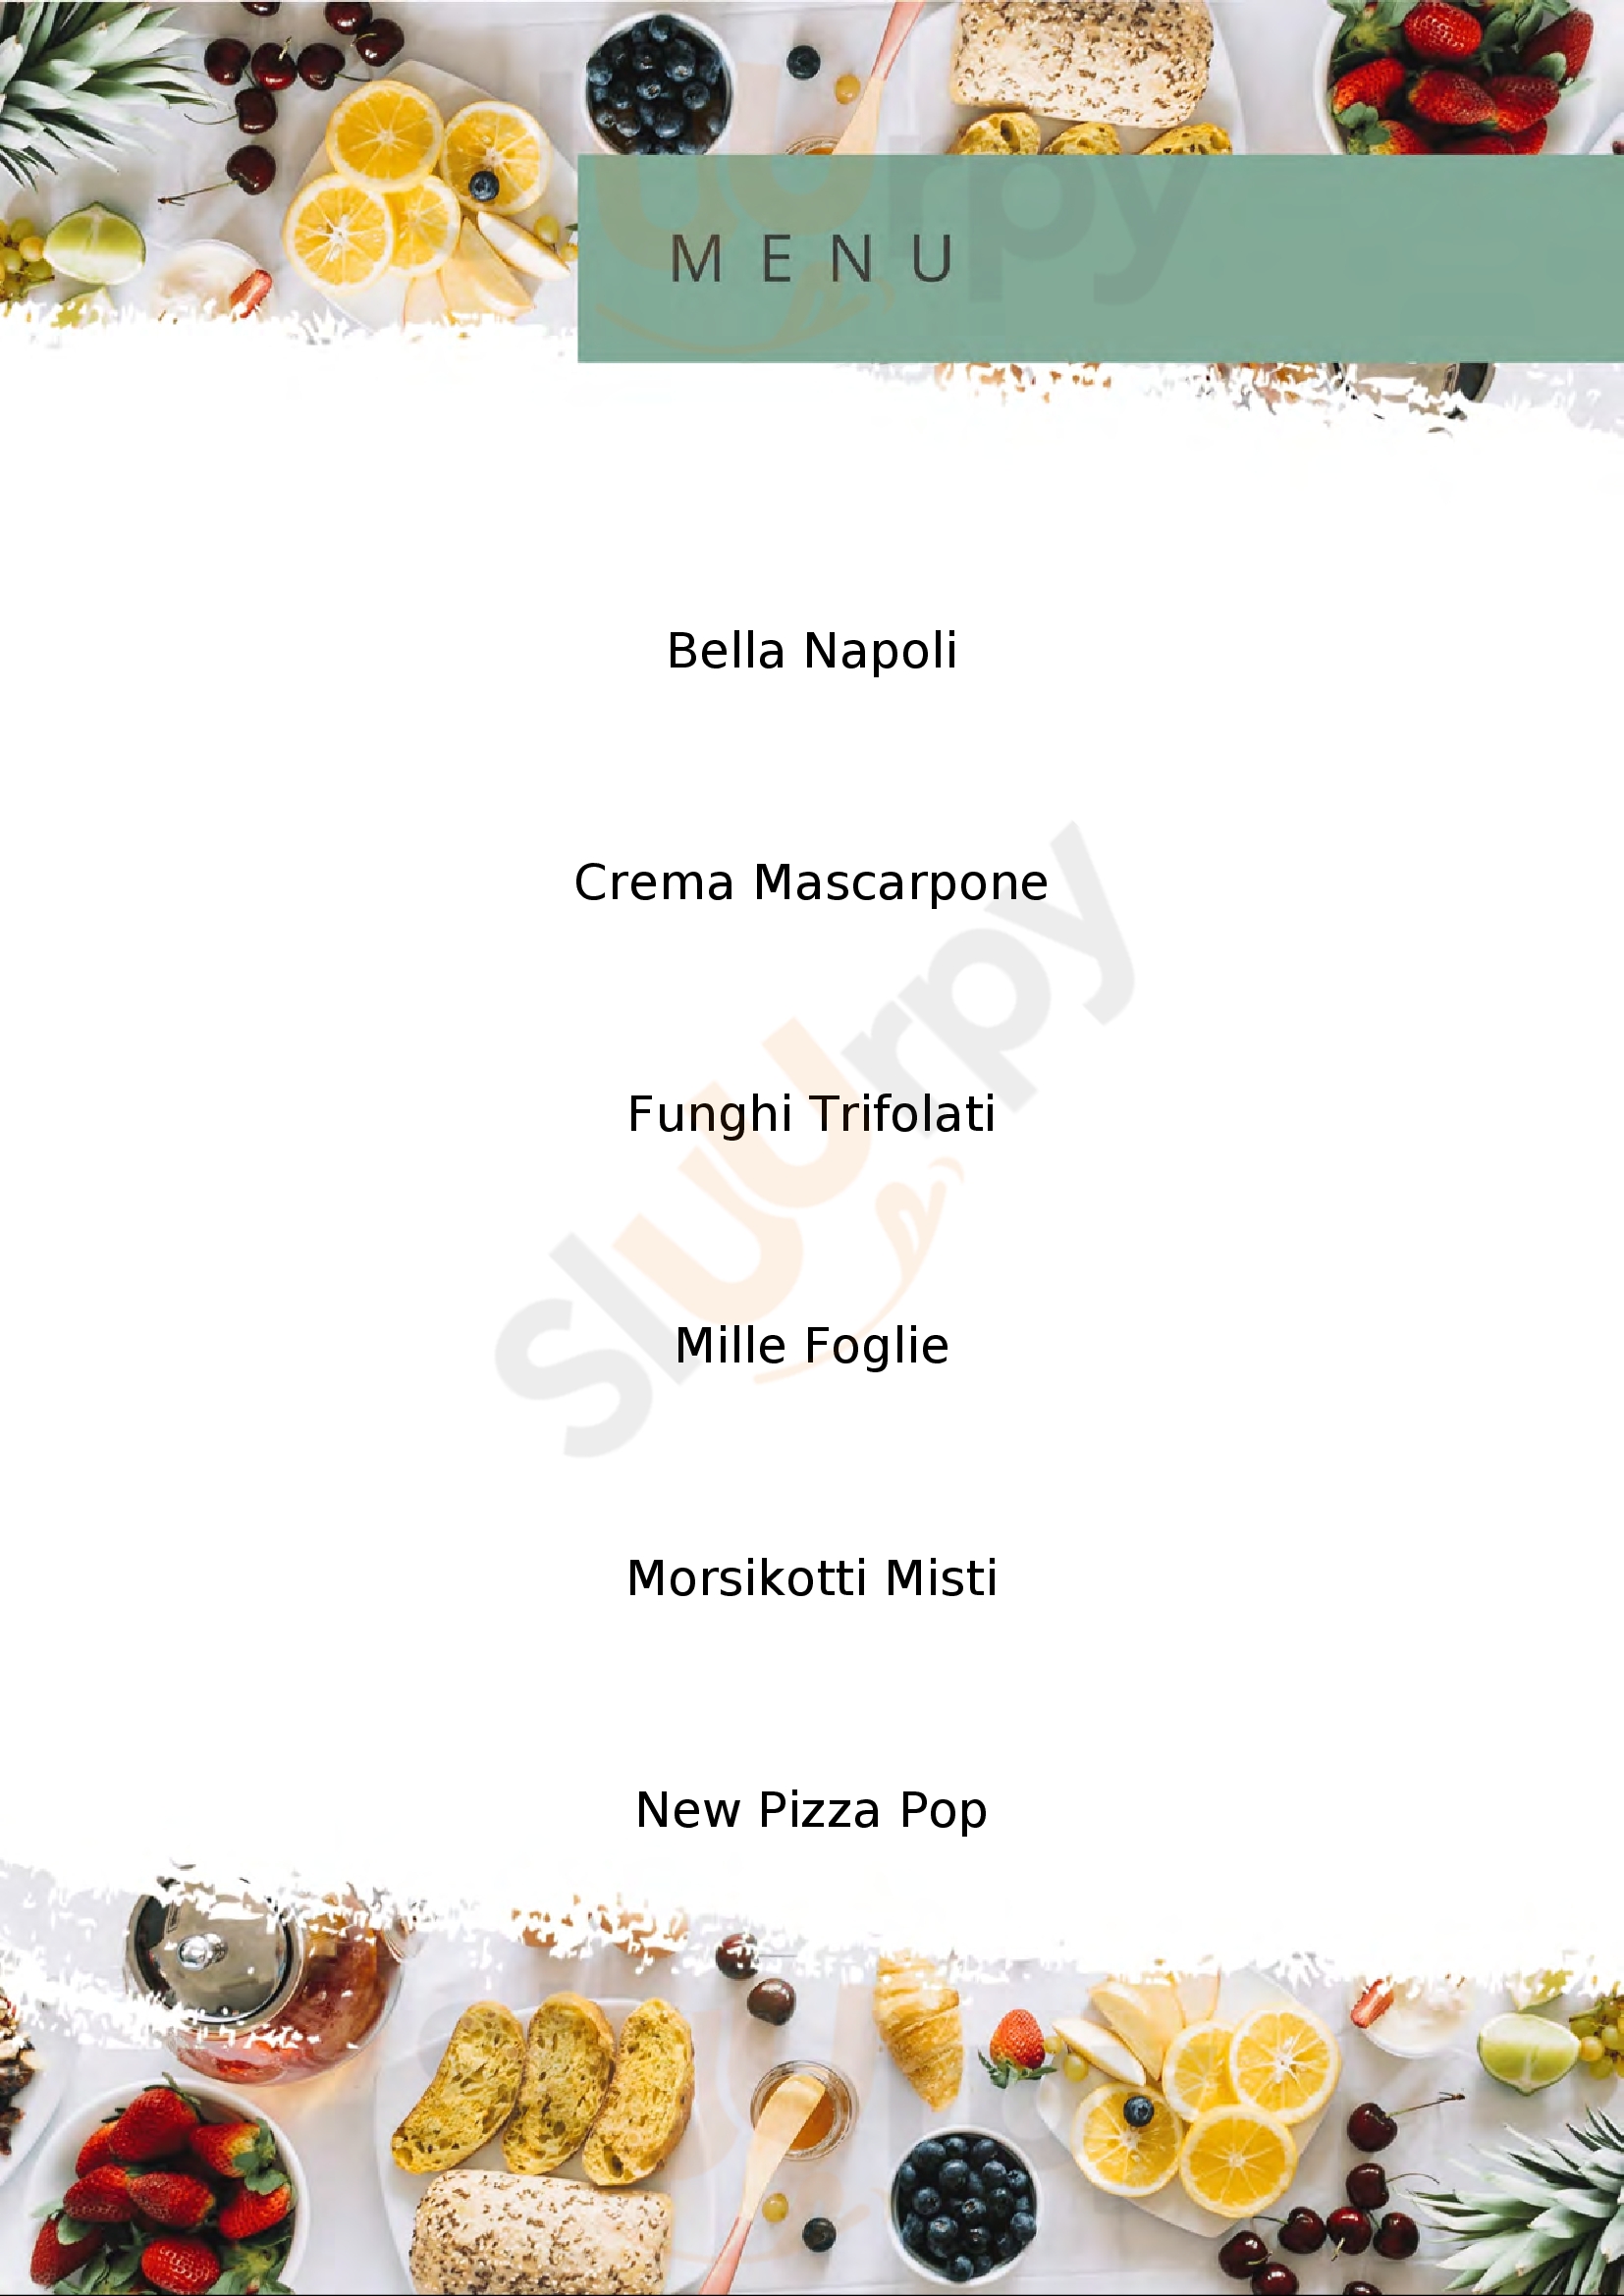 Pizzikotto Pizzeria e Lifferia Bergamo menù 1 pagina